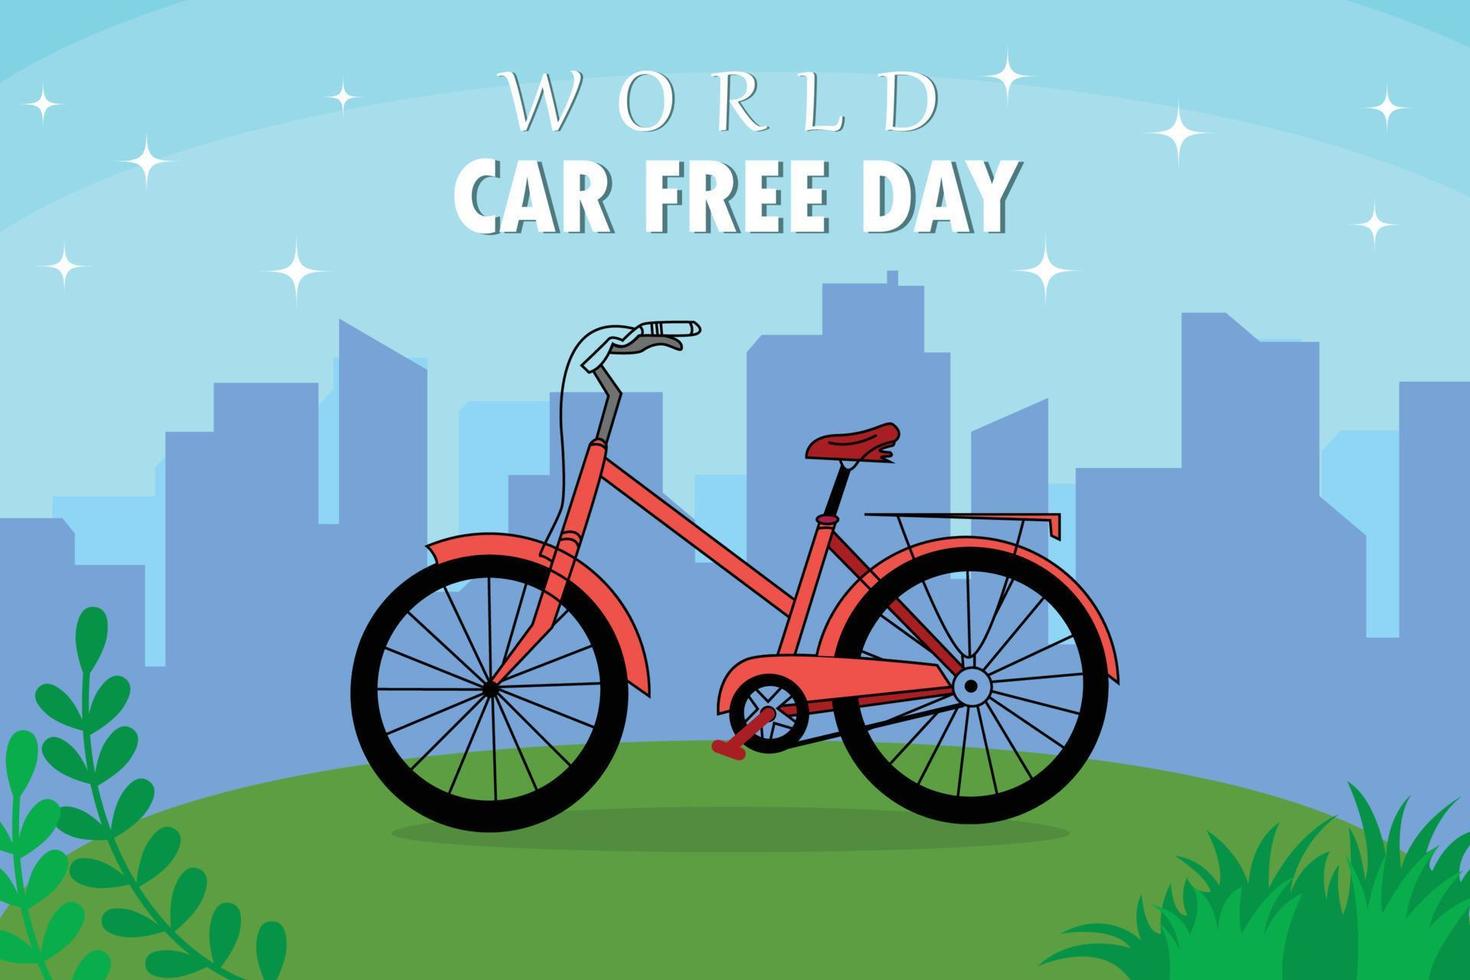 Giornata mondiale senza auto il 22 settembre messaggio di annuncio con disegno di gesso ruote per biciclette e biciclette mondiali su sfondo verde lavagna. vettore